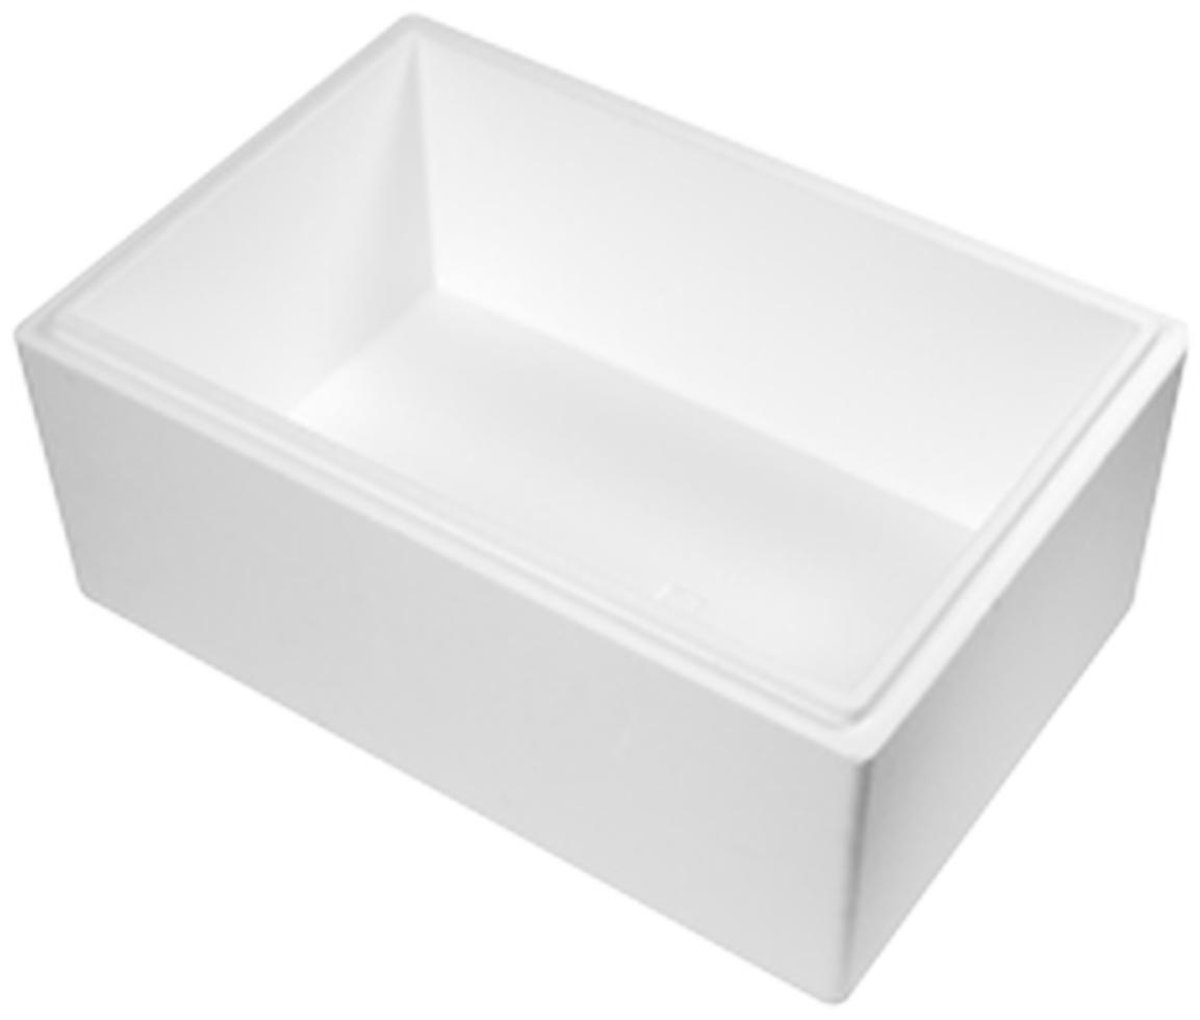 30 Liter (Met koelelementen) - Isolatie Doos - Droogijs Box - doos - EPS - Koelbox - Duurzaam (Inclusief 3 Ice gel packs 400ml) | Tweedehands | Boekenbalie